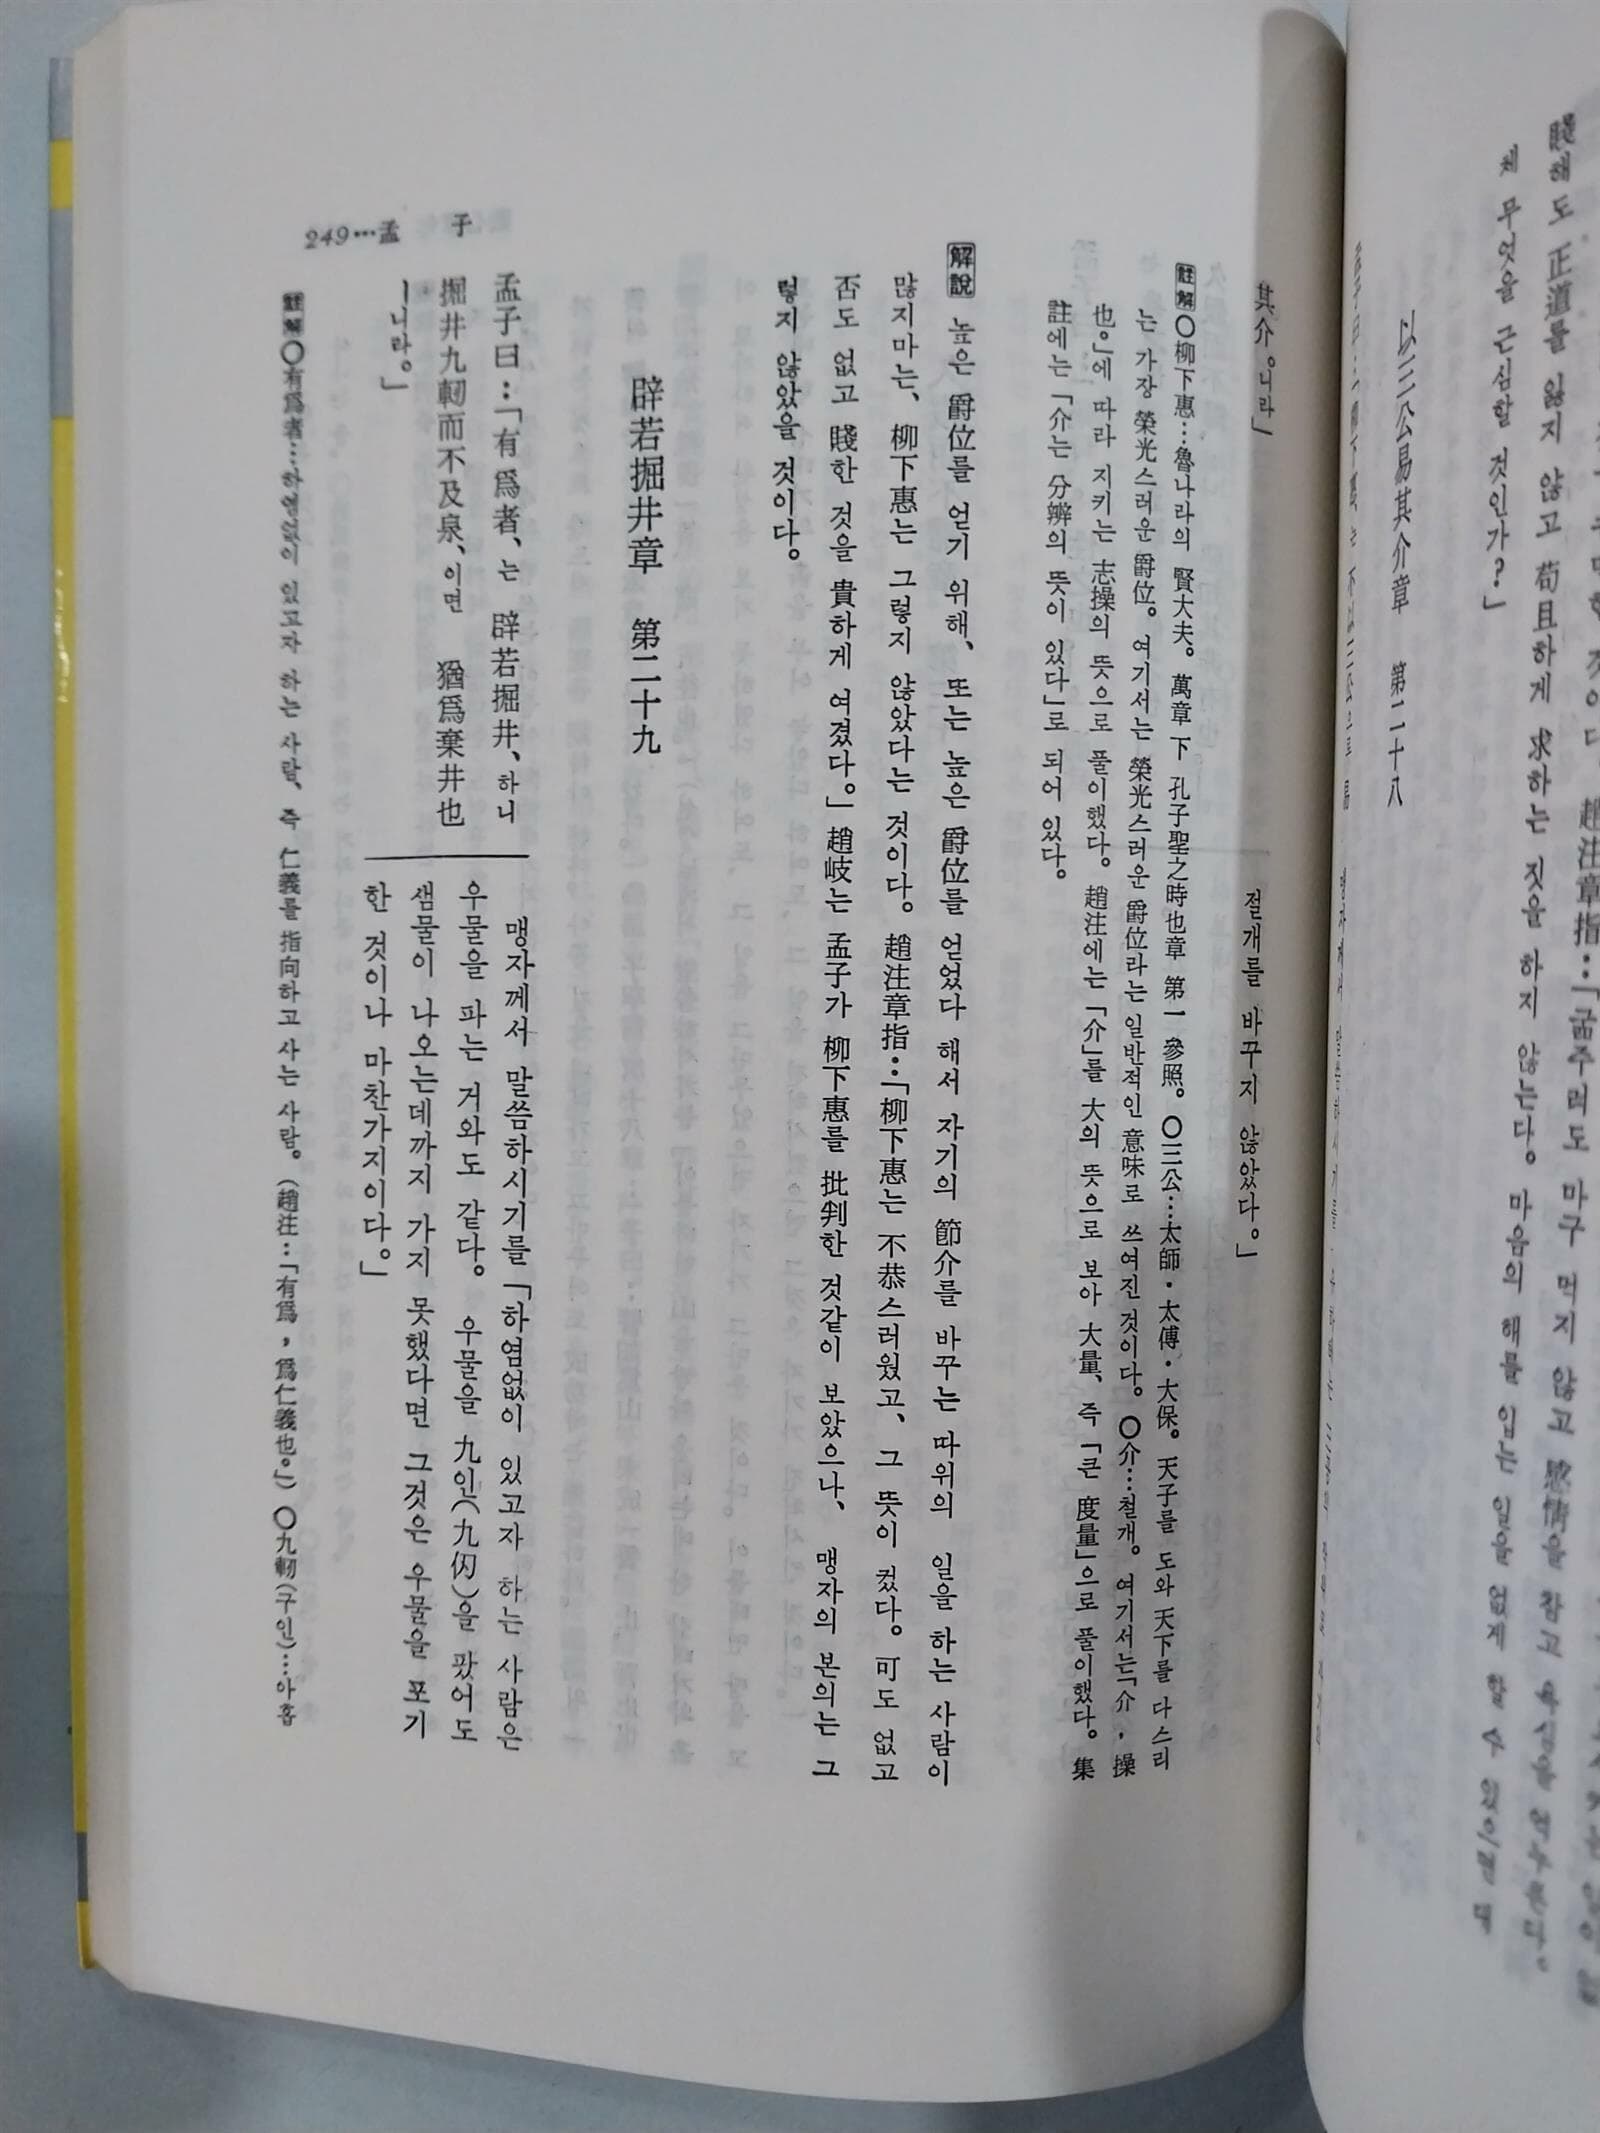 맹자 상, 하 세트 - 신완역, 명문동양고전5,6